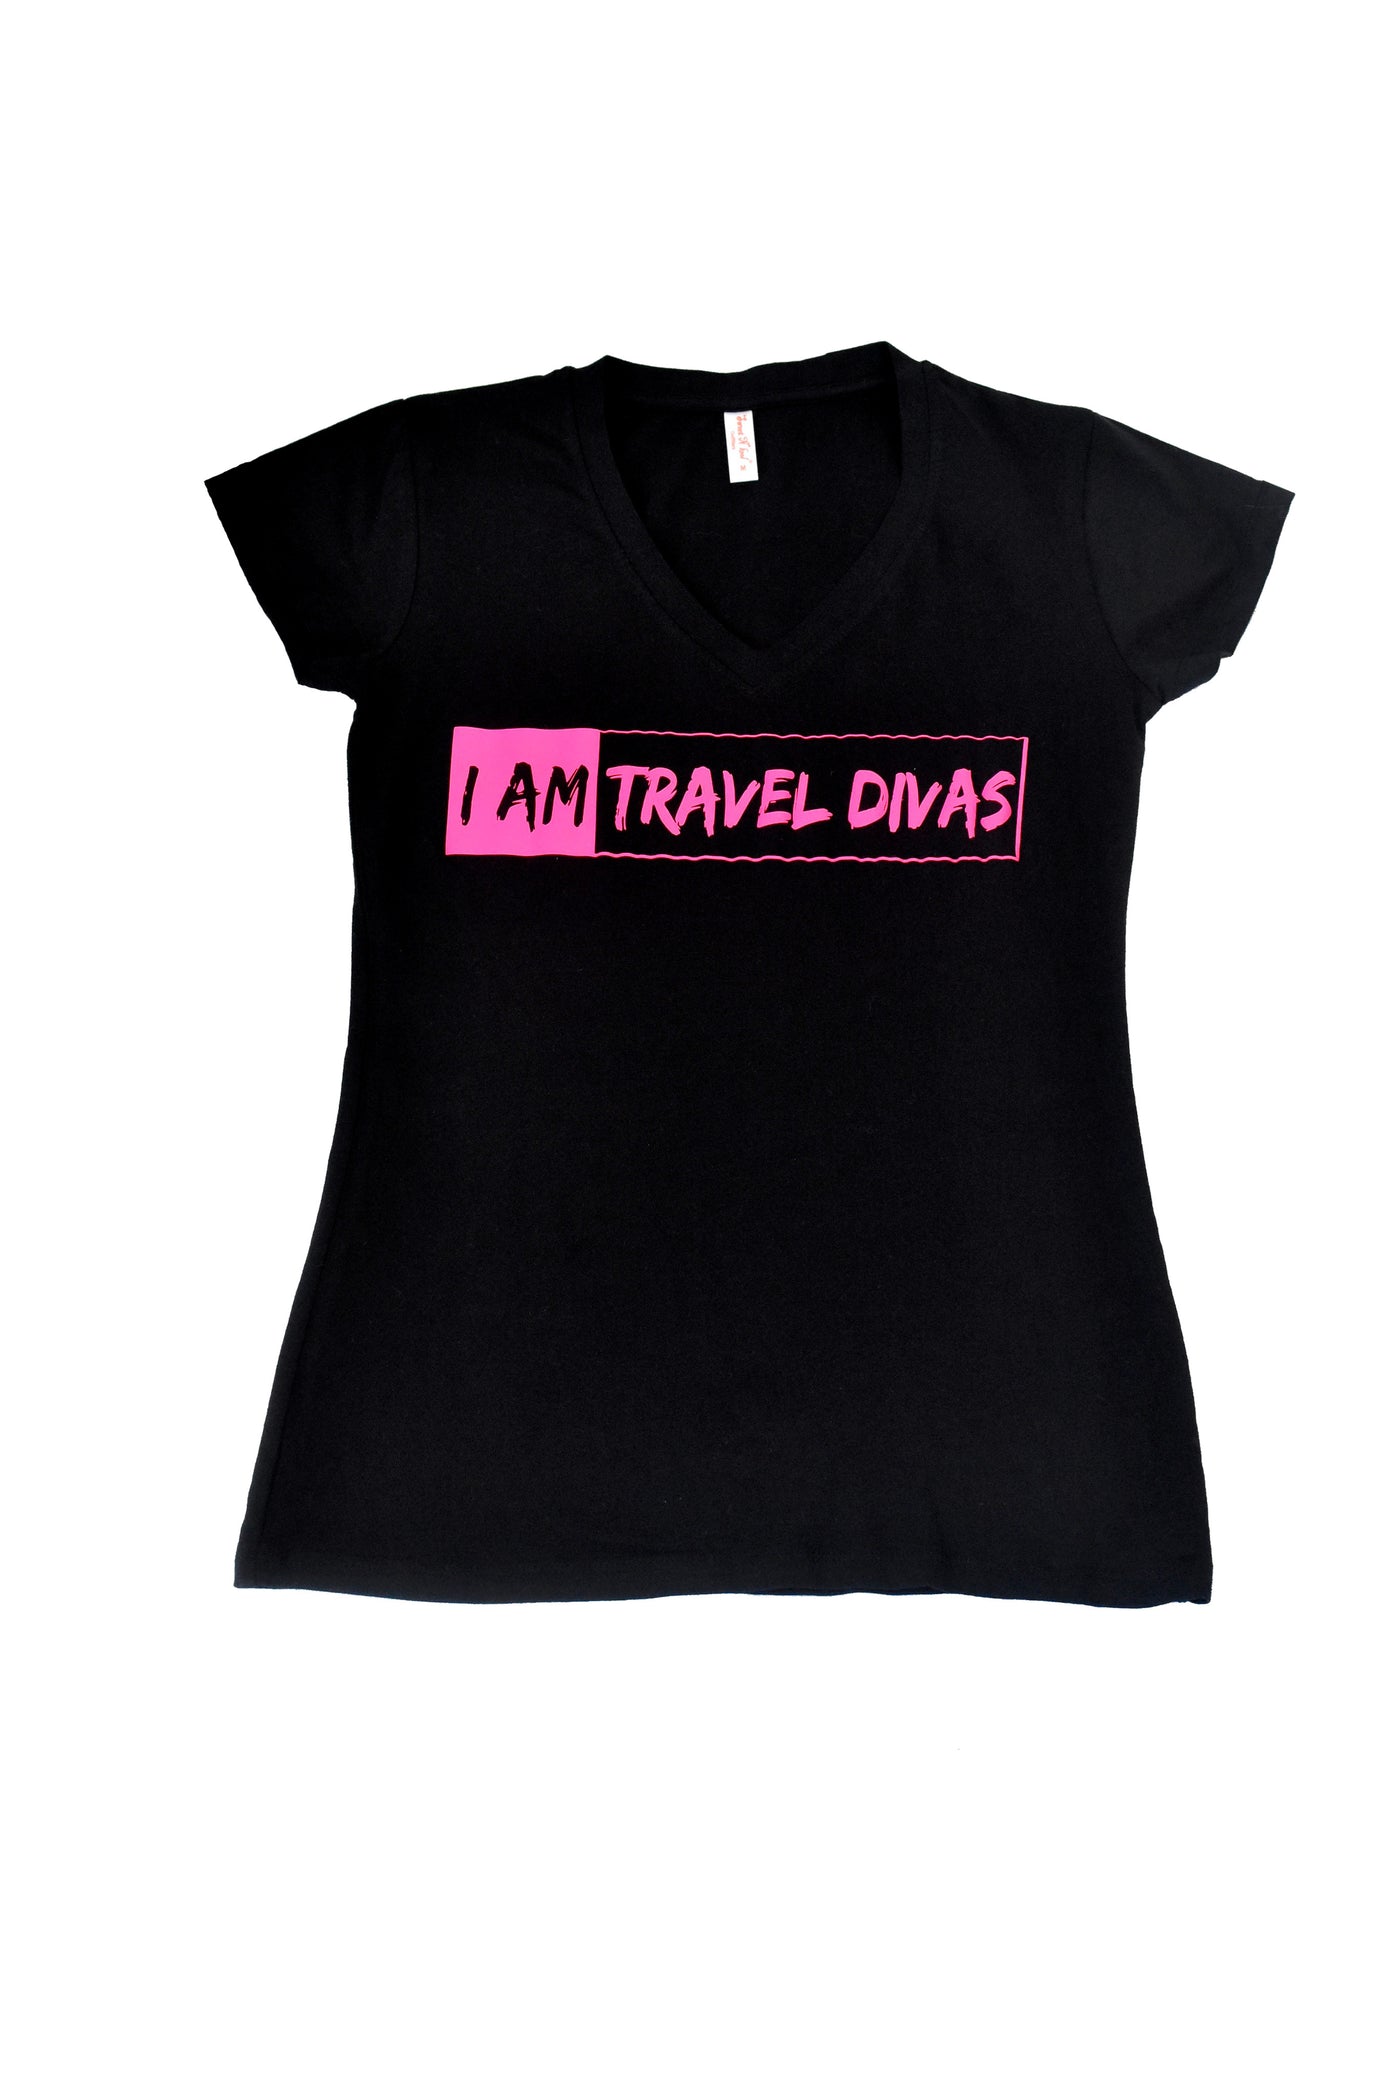 I Am Travel Divas Women's Shirt - Pink